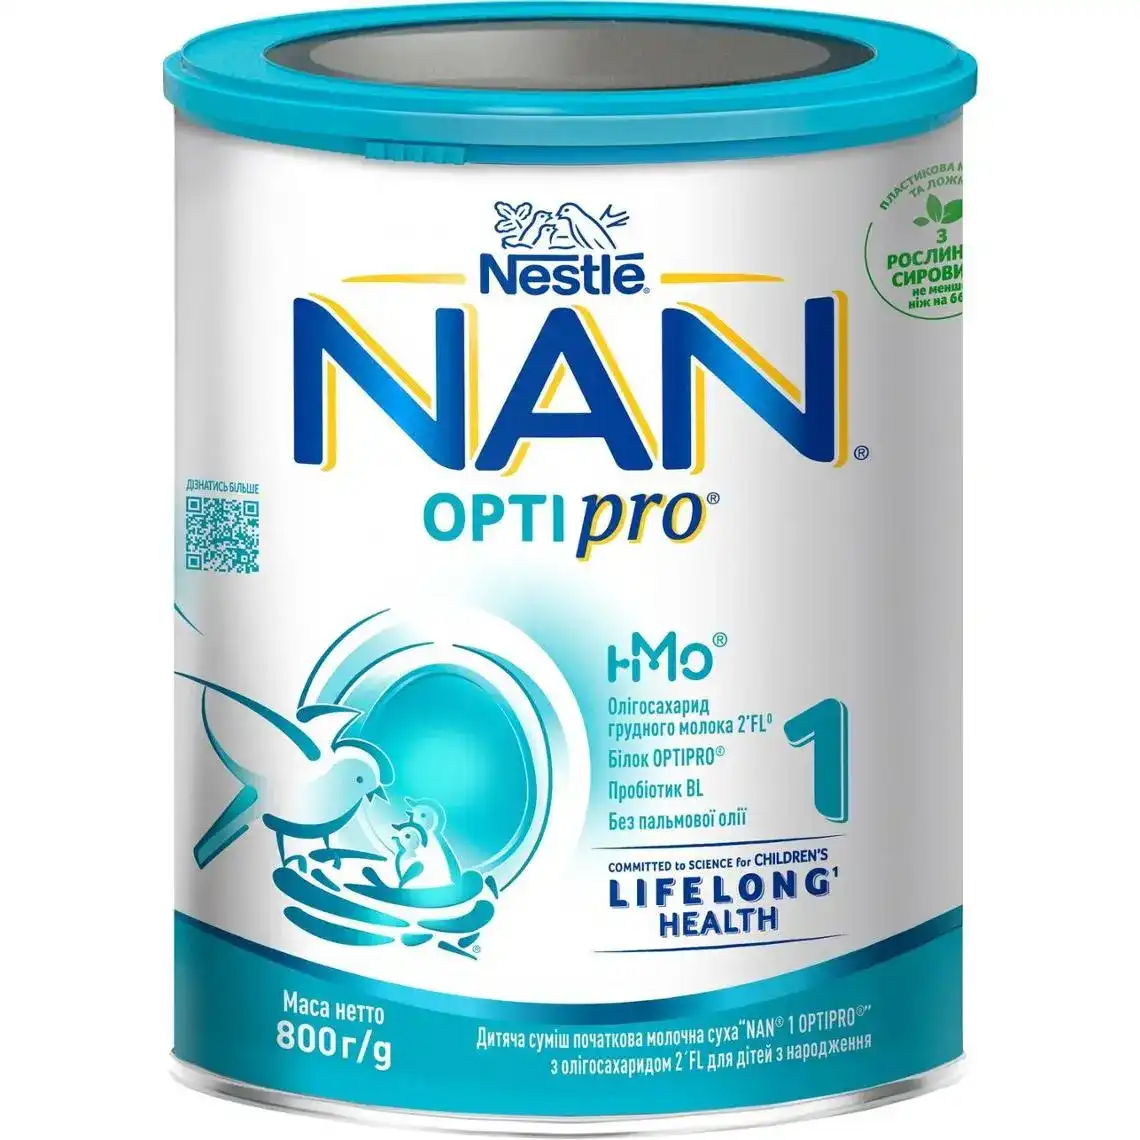 Фото 1 - Дитяча суміш початкова молочна суха NAN 1 OPTIPRO з олігосахаридом 2`FL для дітей з народження, 800 г